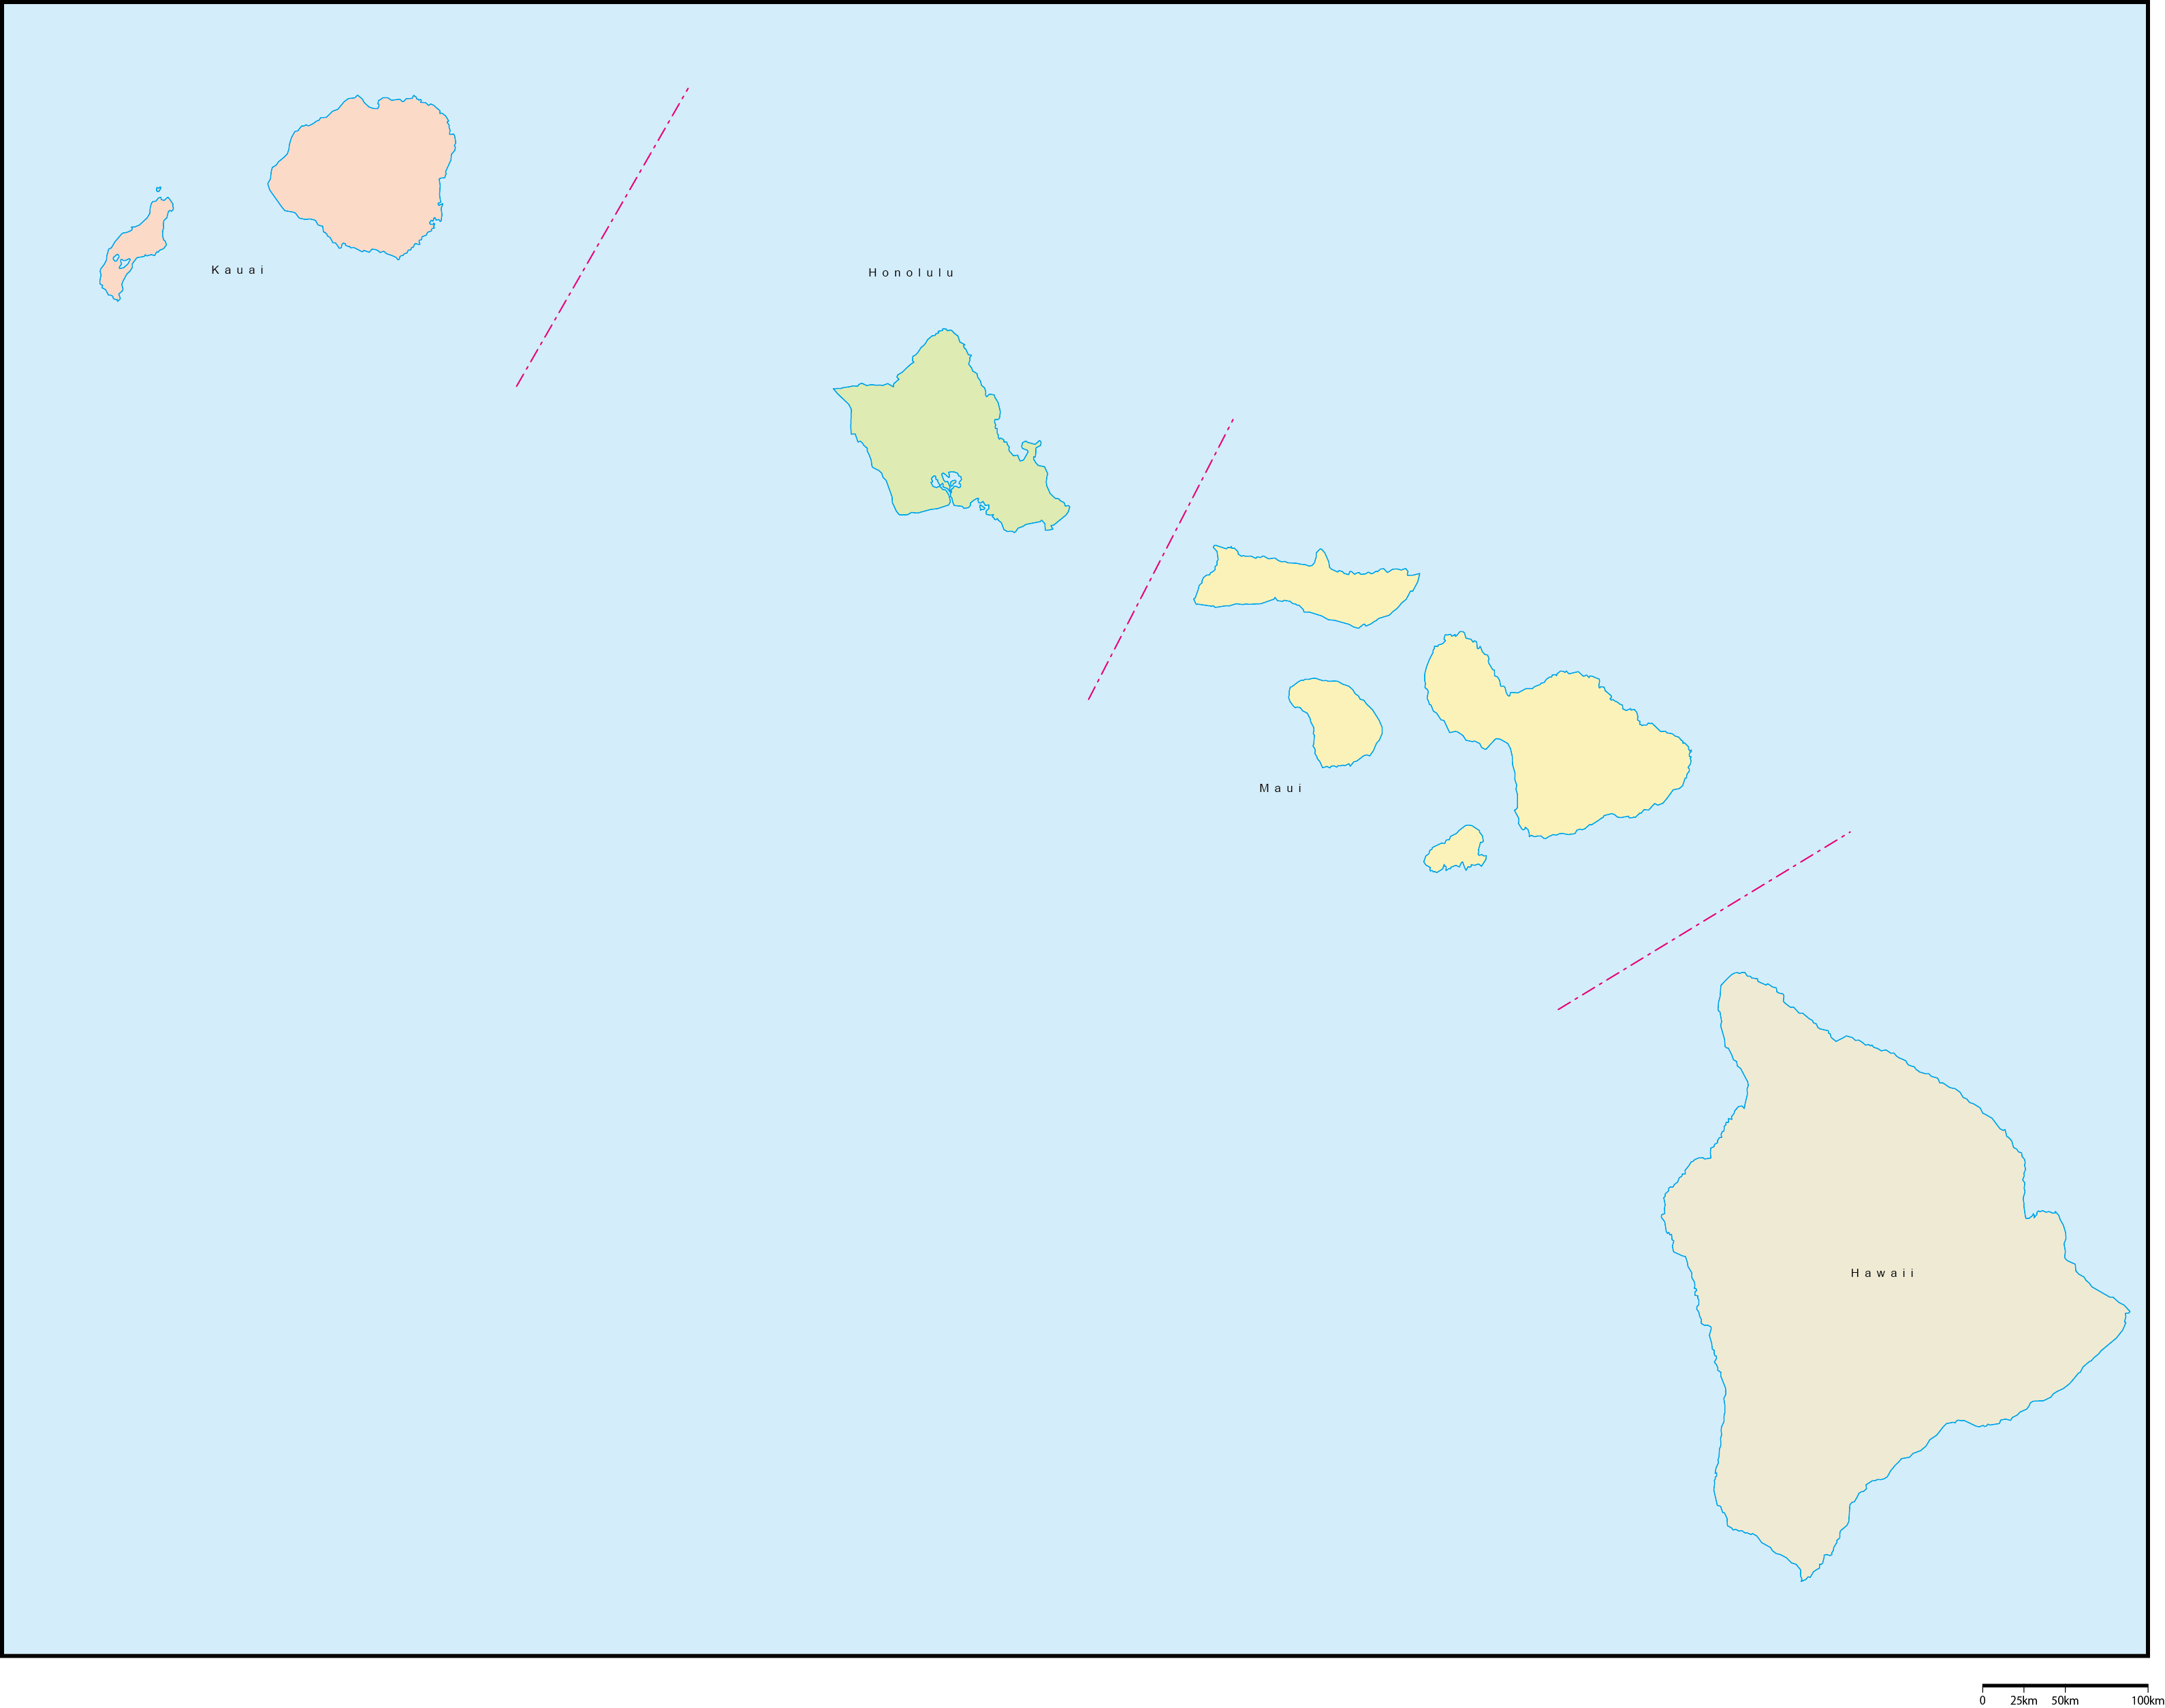 ハワイ州郡色分け地図郡名あり(英語)フリーデータの画像